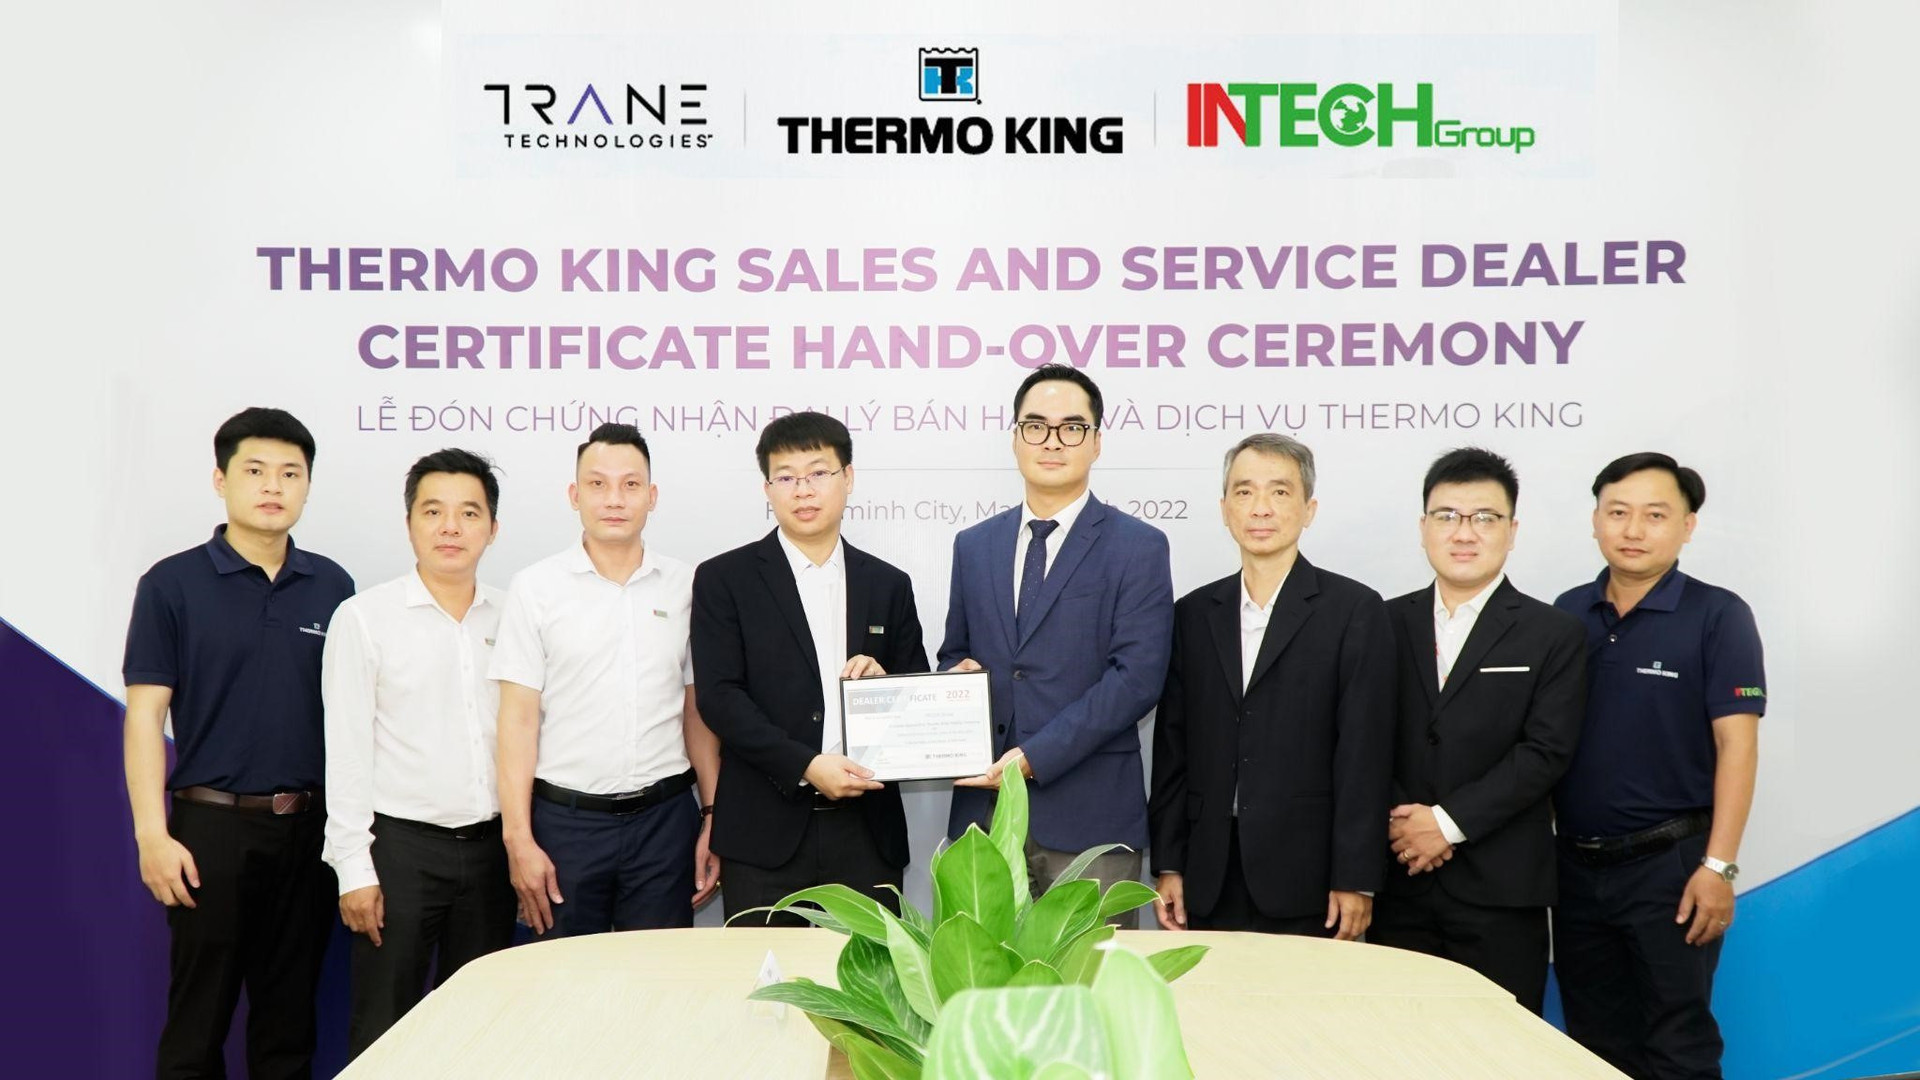 Lễ trao chứng nhận Đại lý được tổ chức với sự tham gia của đội ngũ trực tiếp triển khai kinh doanh, dịch vụ THERMO KING 